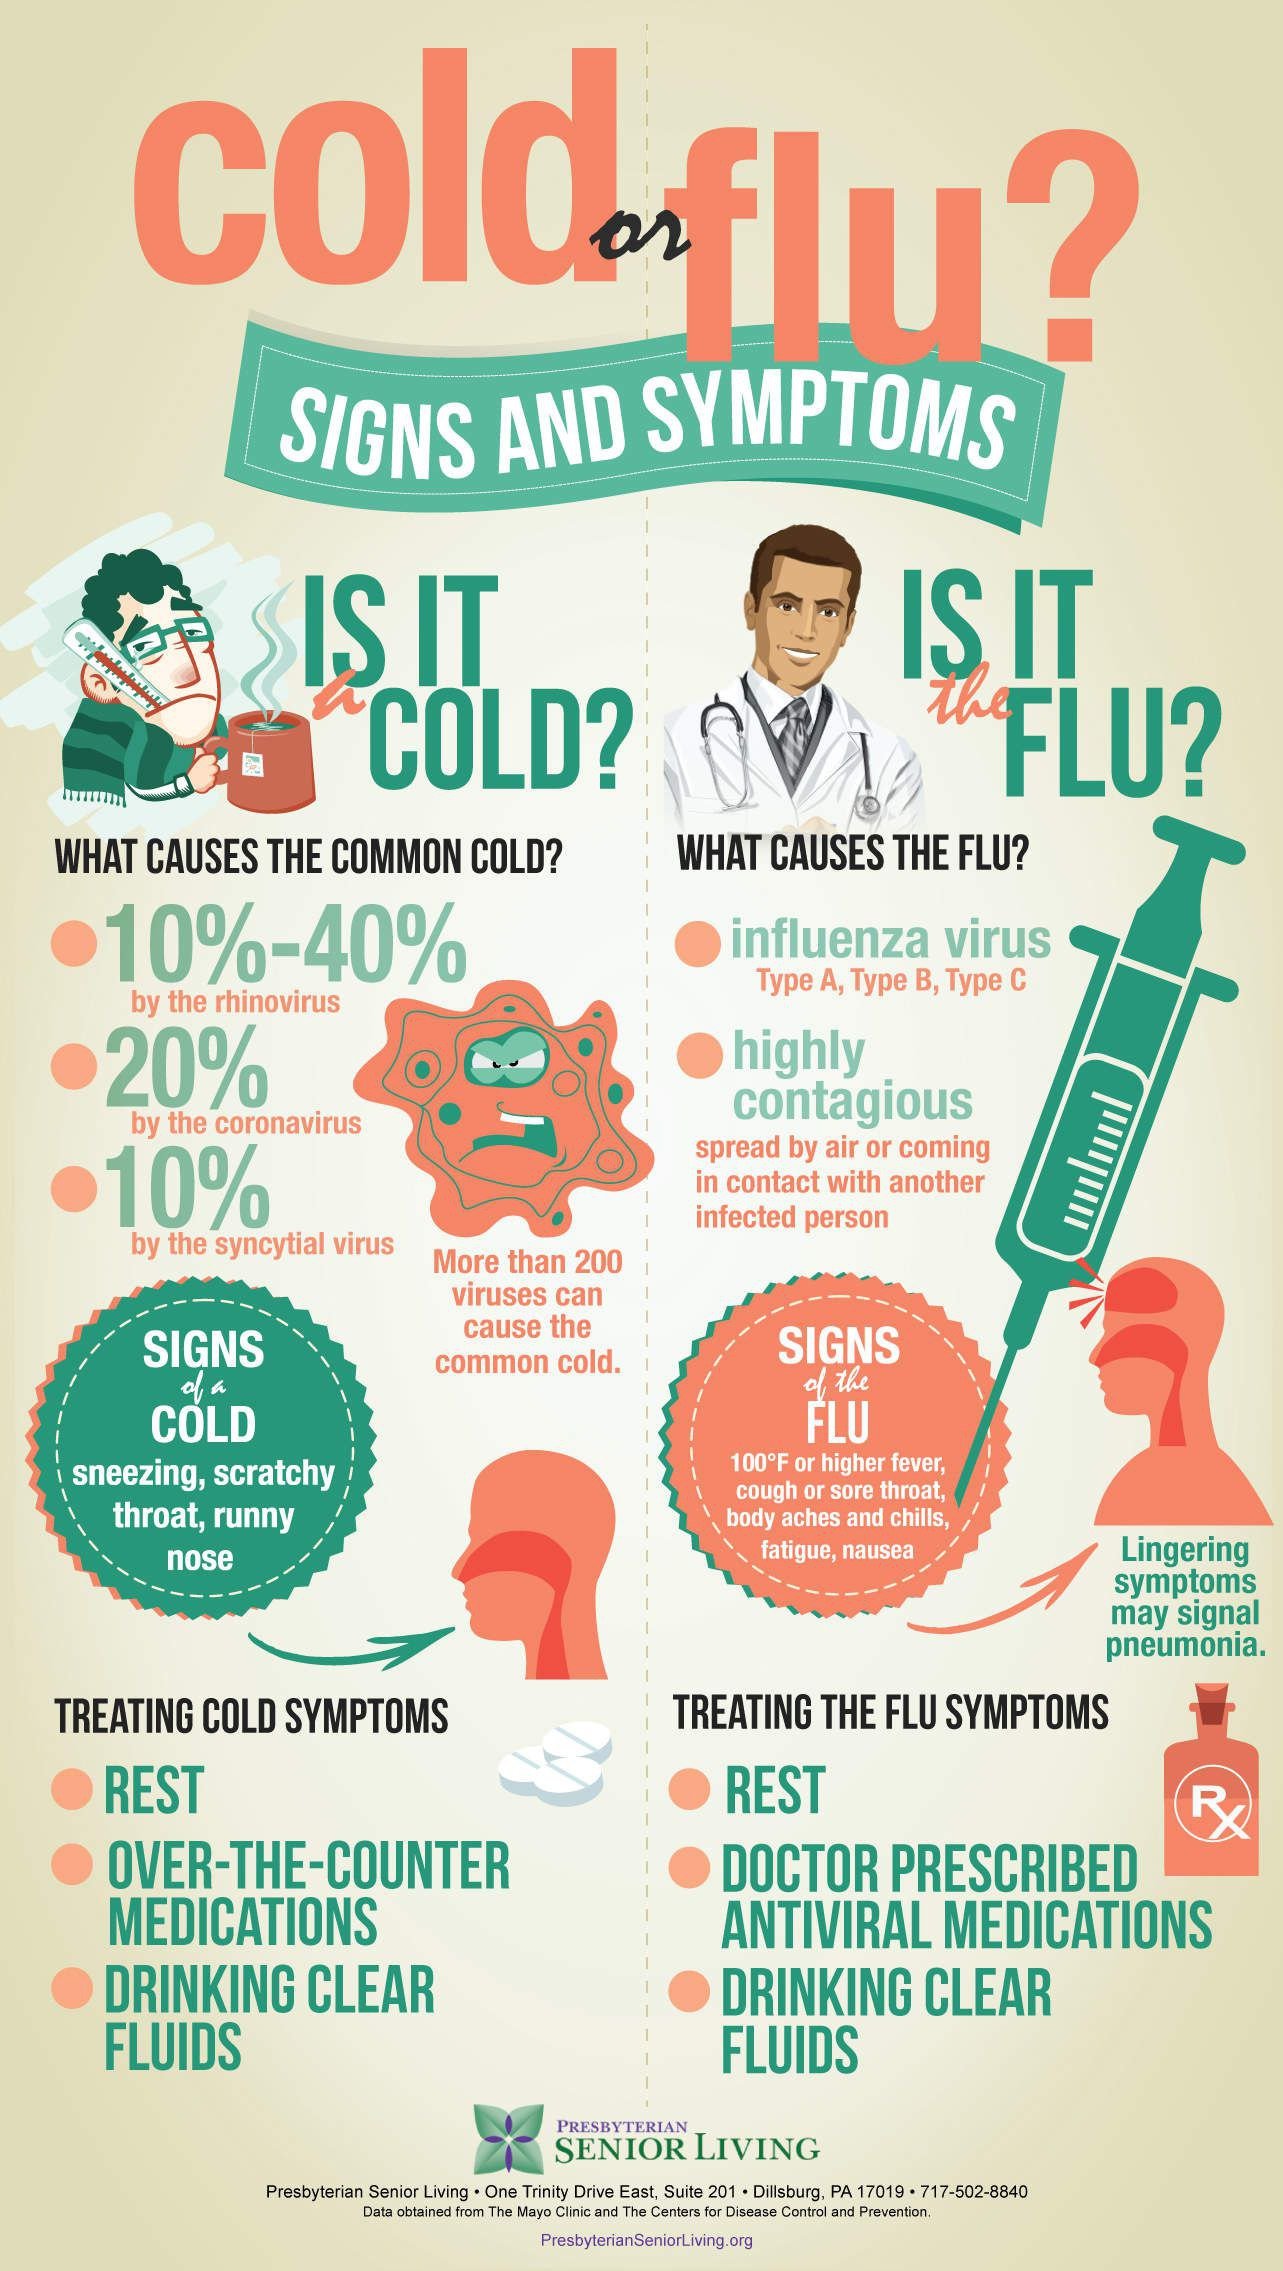 firing-up-for-flu-season-3-tips-for-flu-prevention-in-seniors